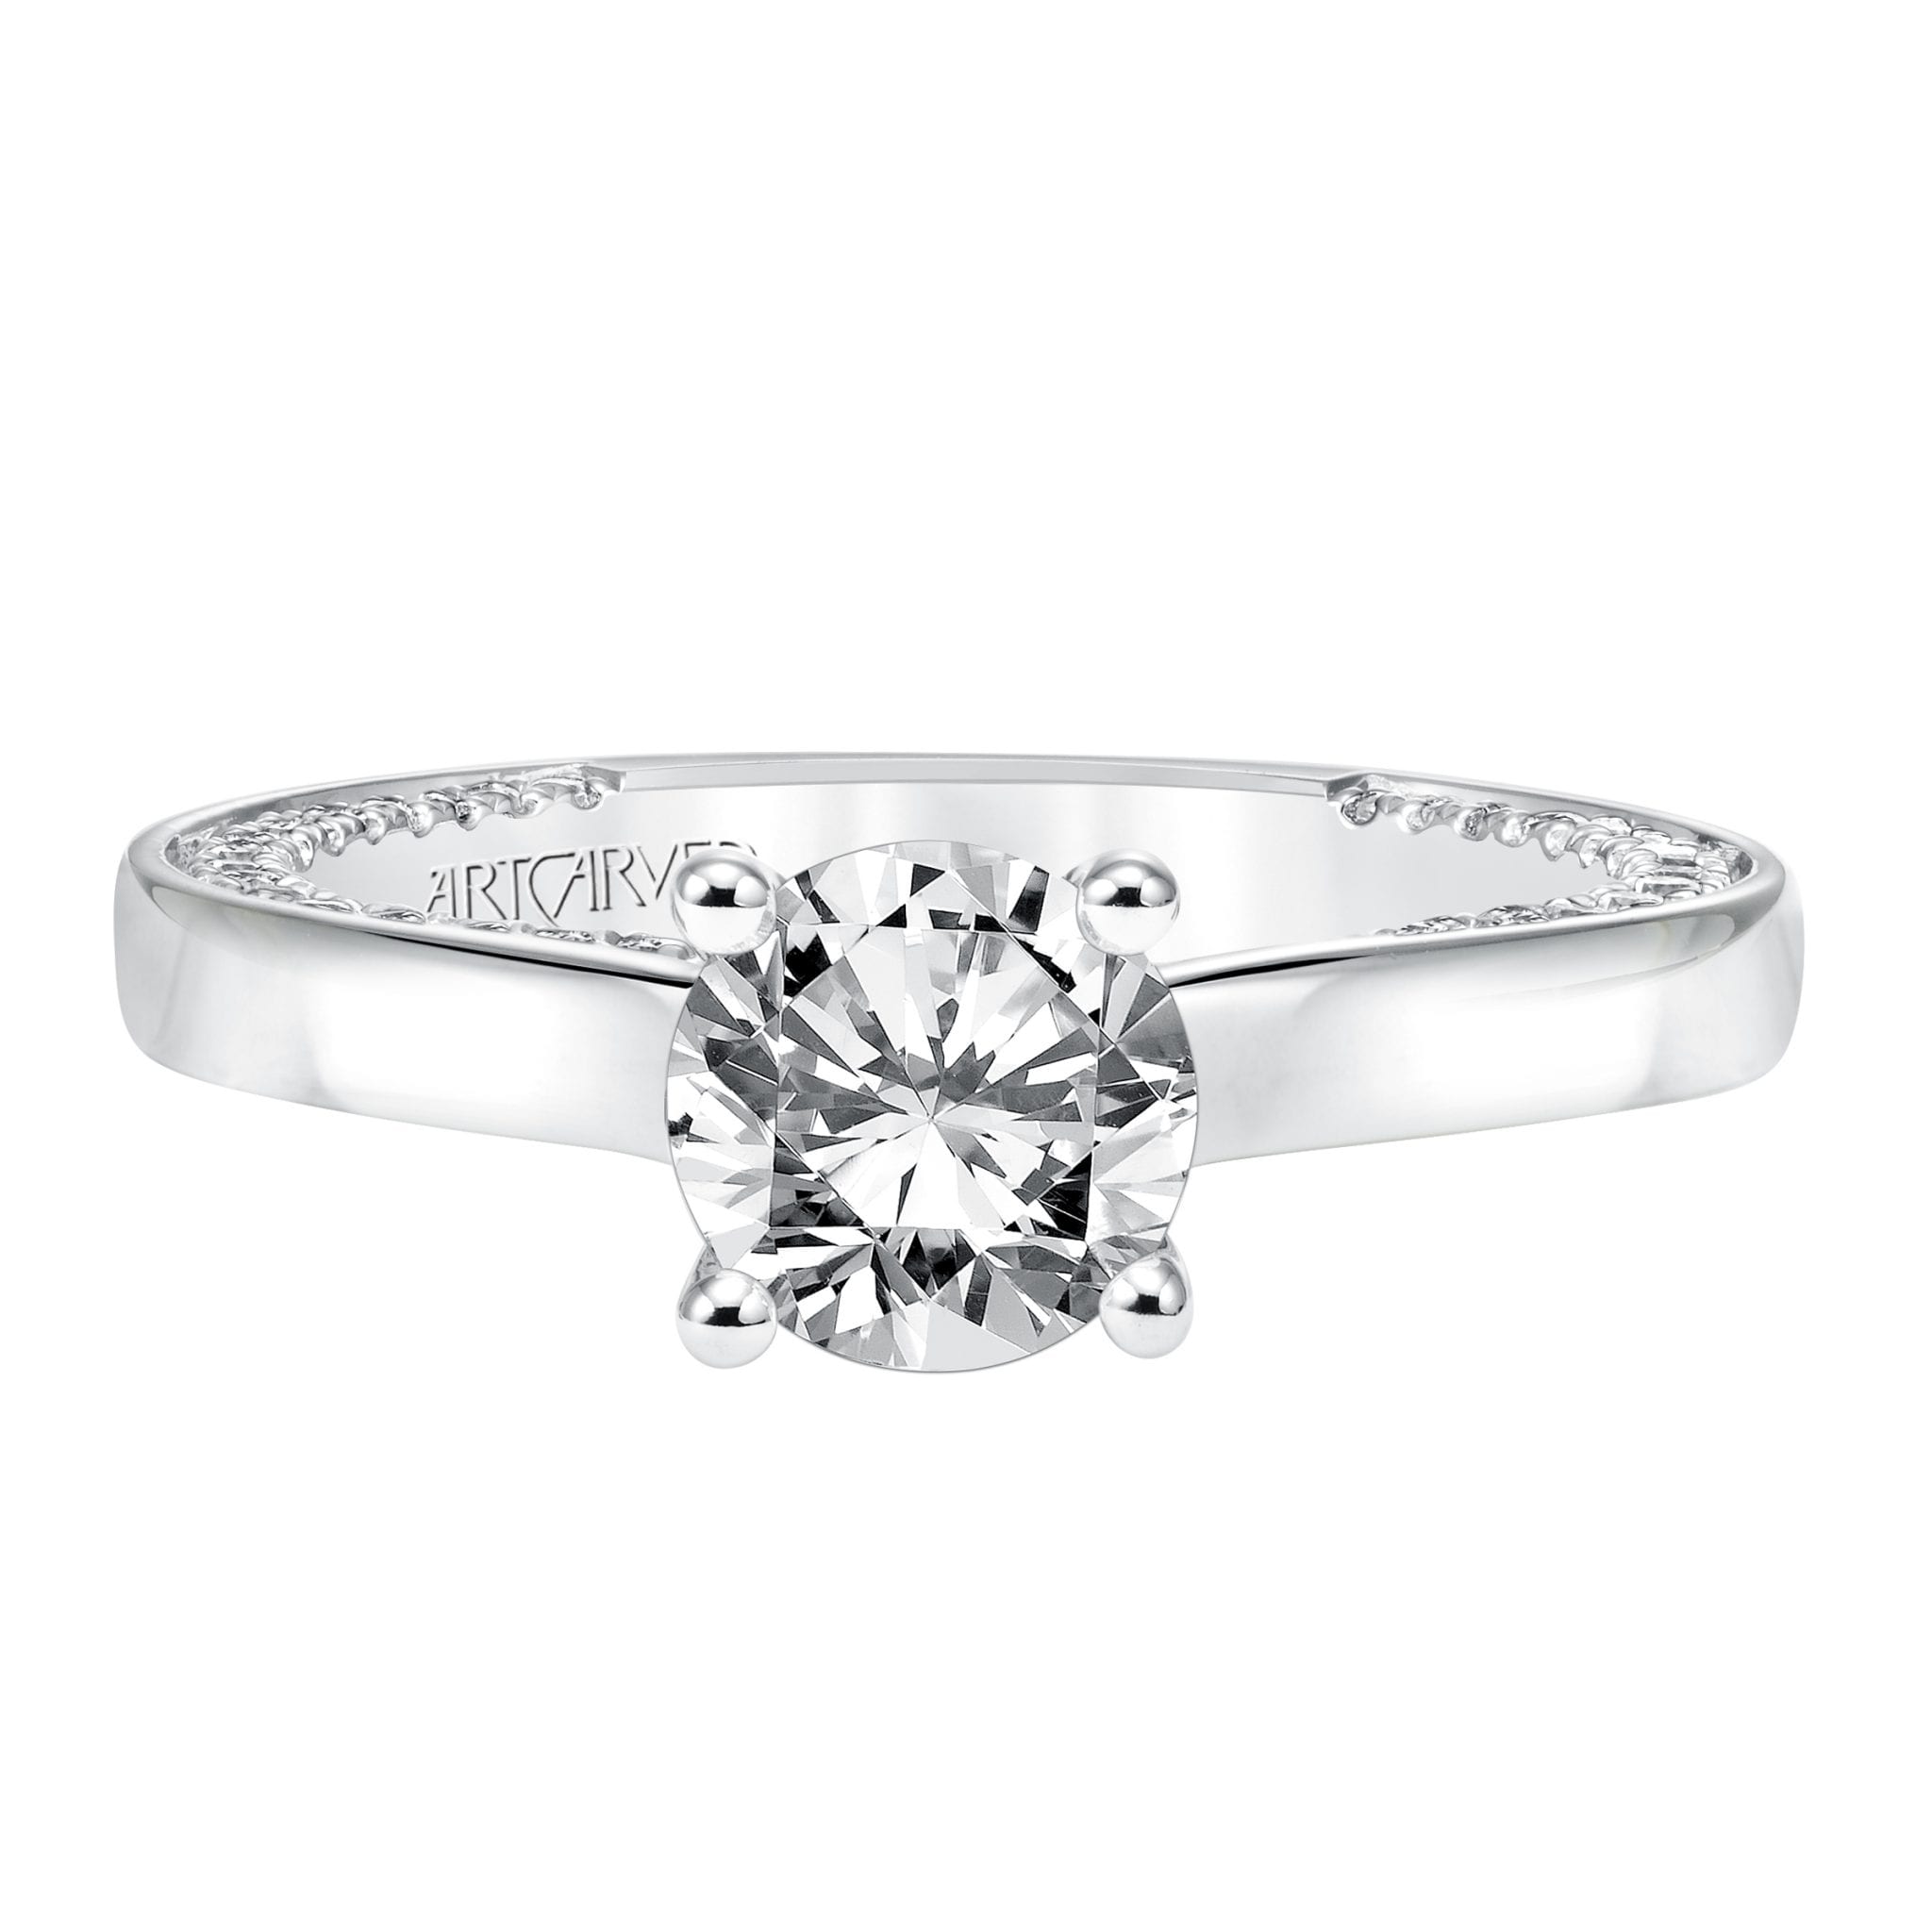 Wedding Band Rings For Women - Handmade Diamond Ring For Sale – KMJ